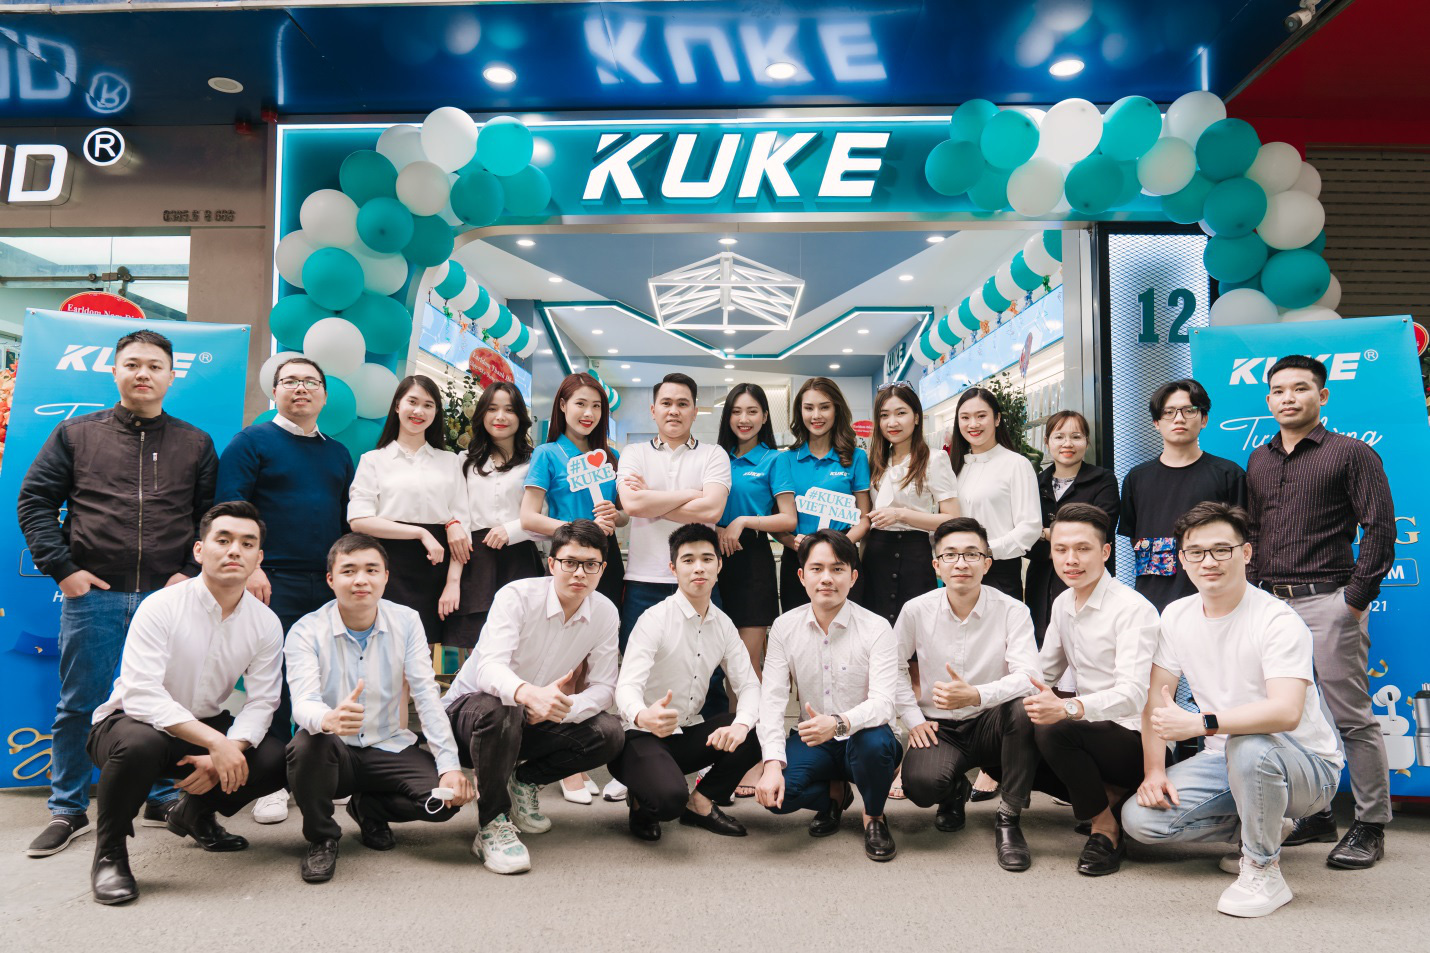 Khai trương Showroom phụ kiện điện thoại KUKE chính thức tại Hà Nội [HOT]